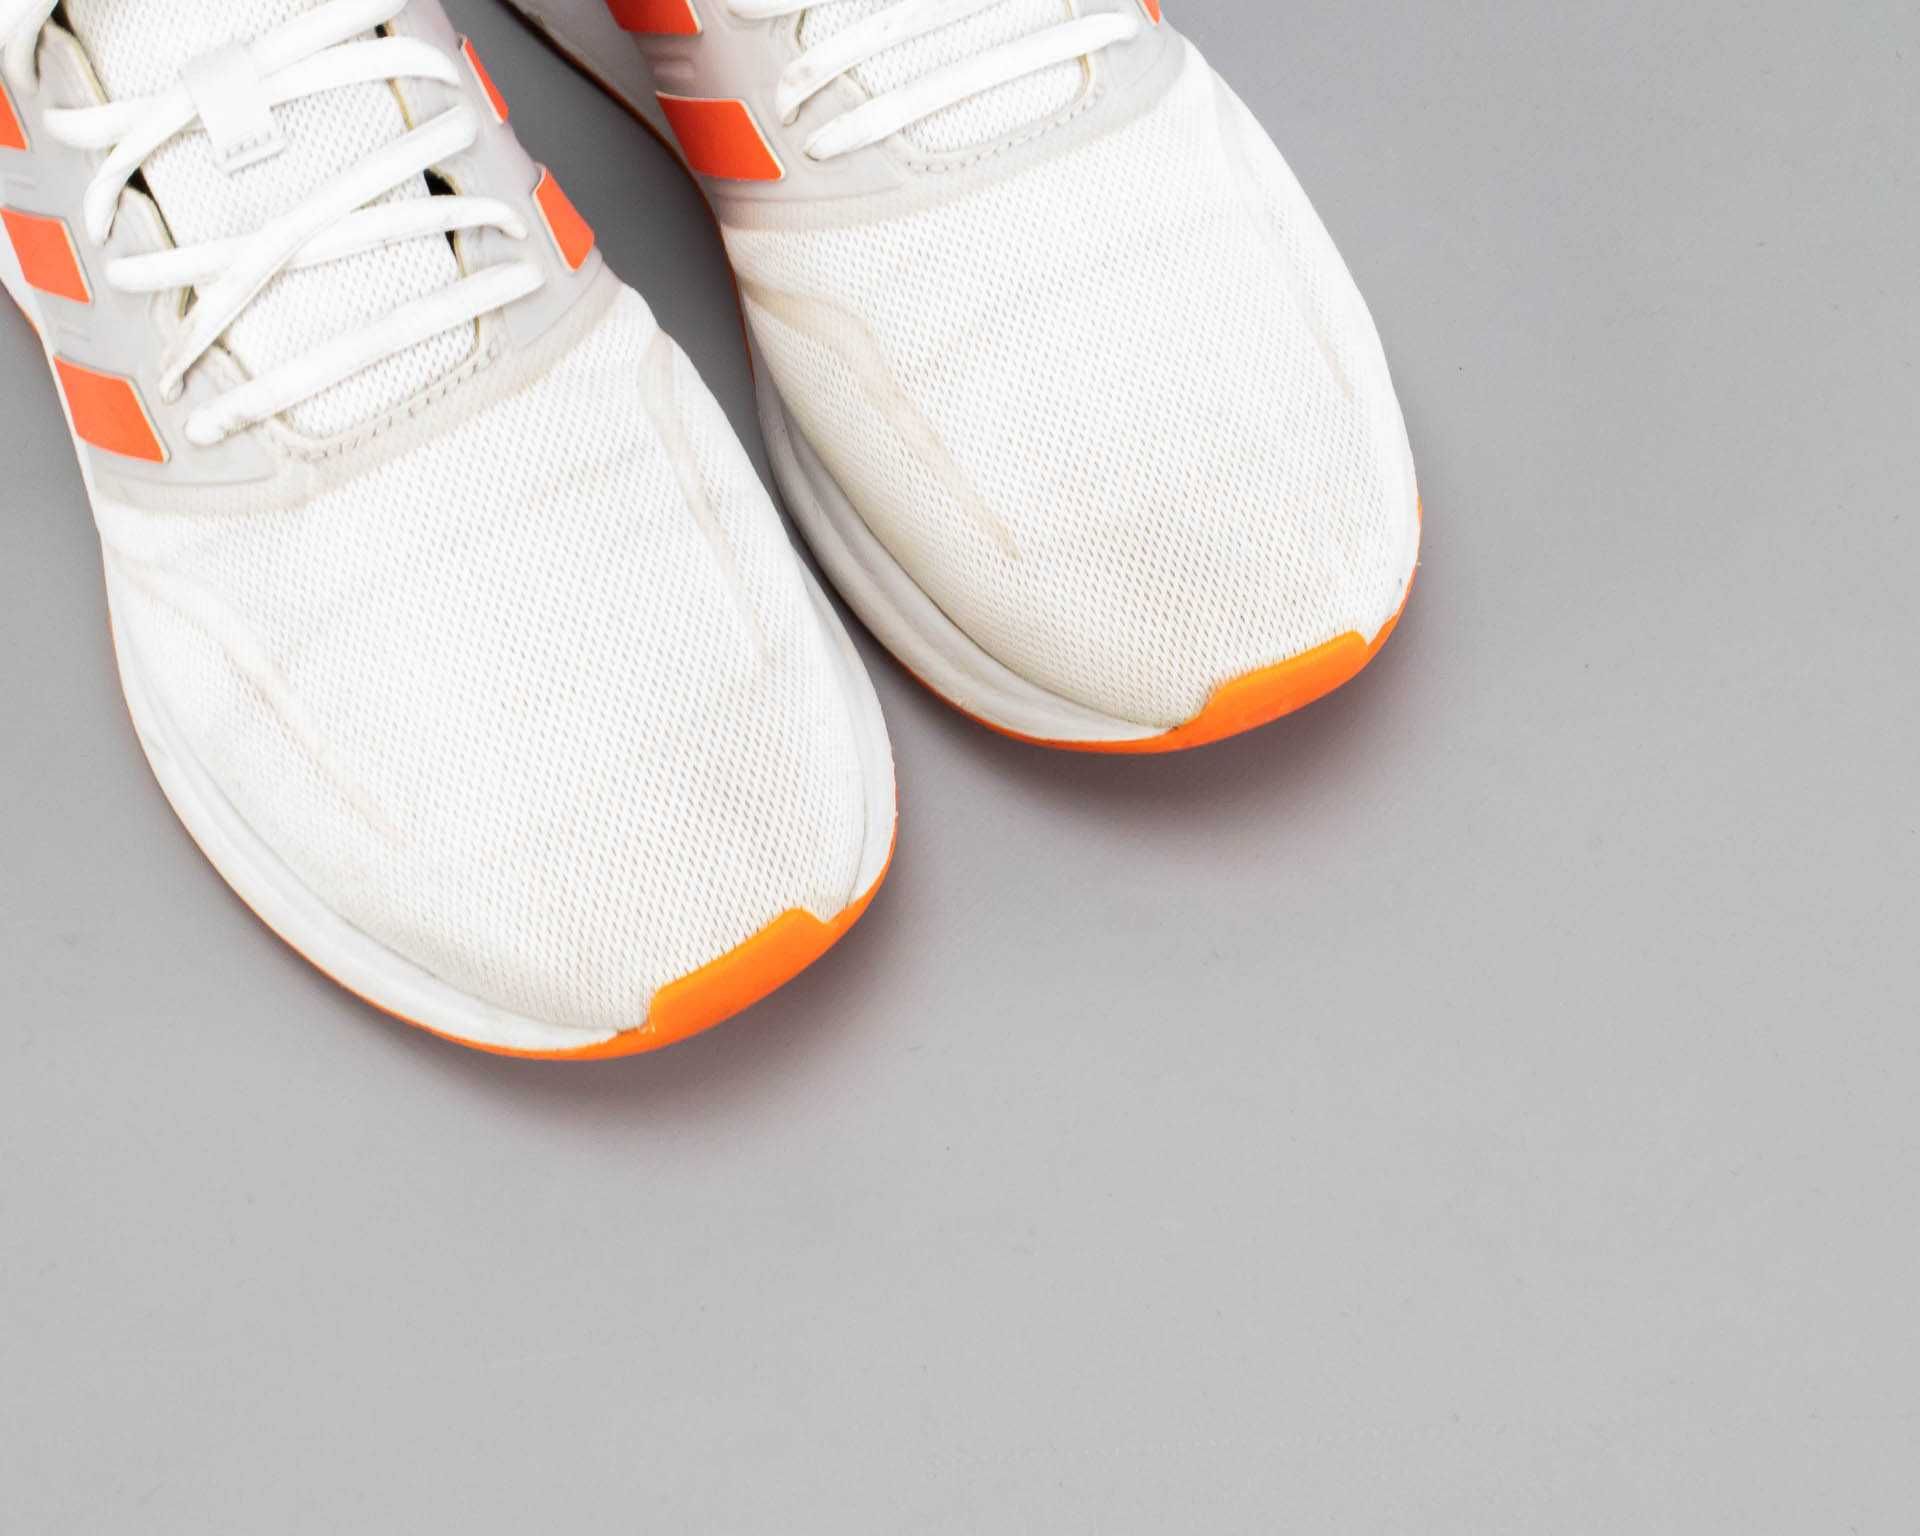 Легкие беговые кроссовки в сетку Adidas Runfalcon.43 размер